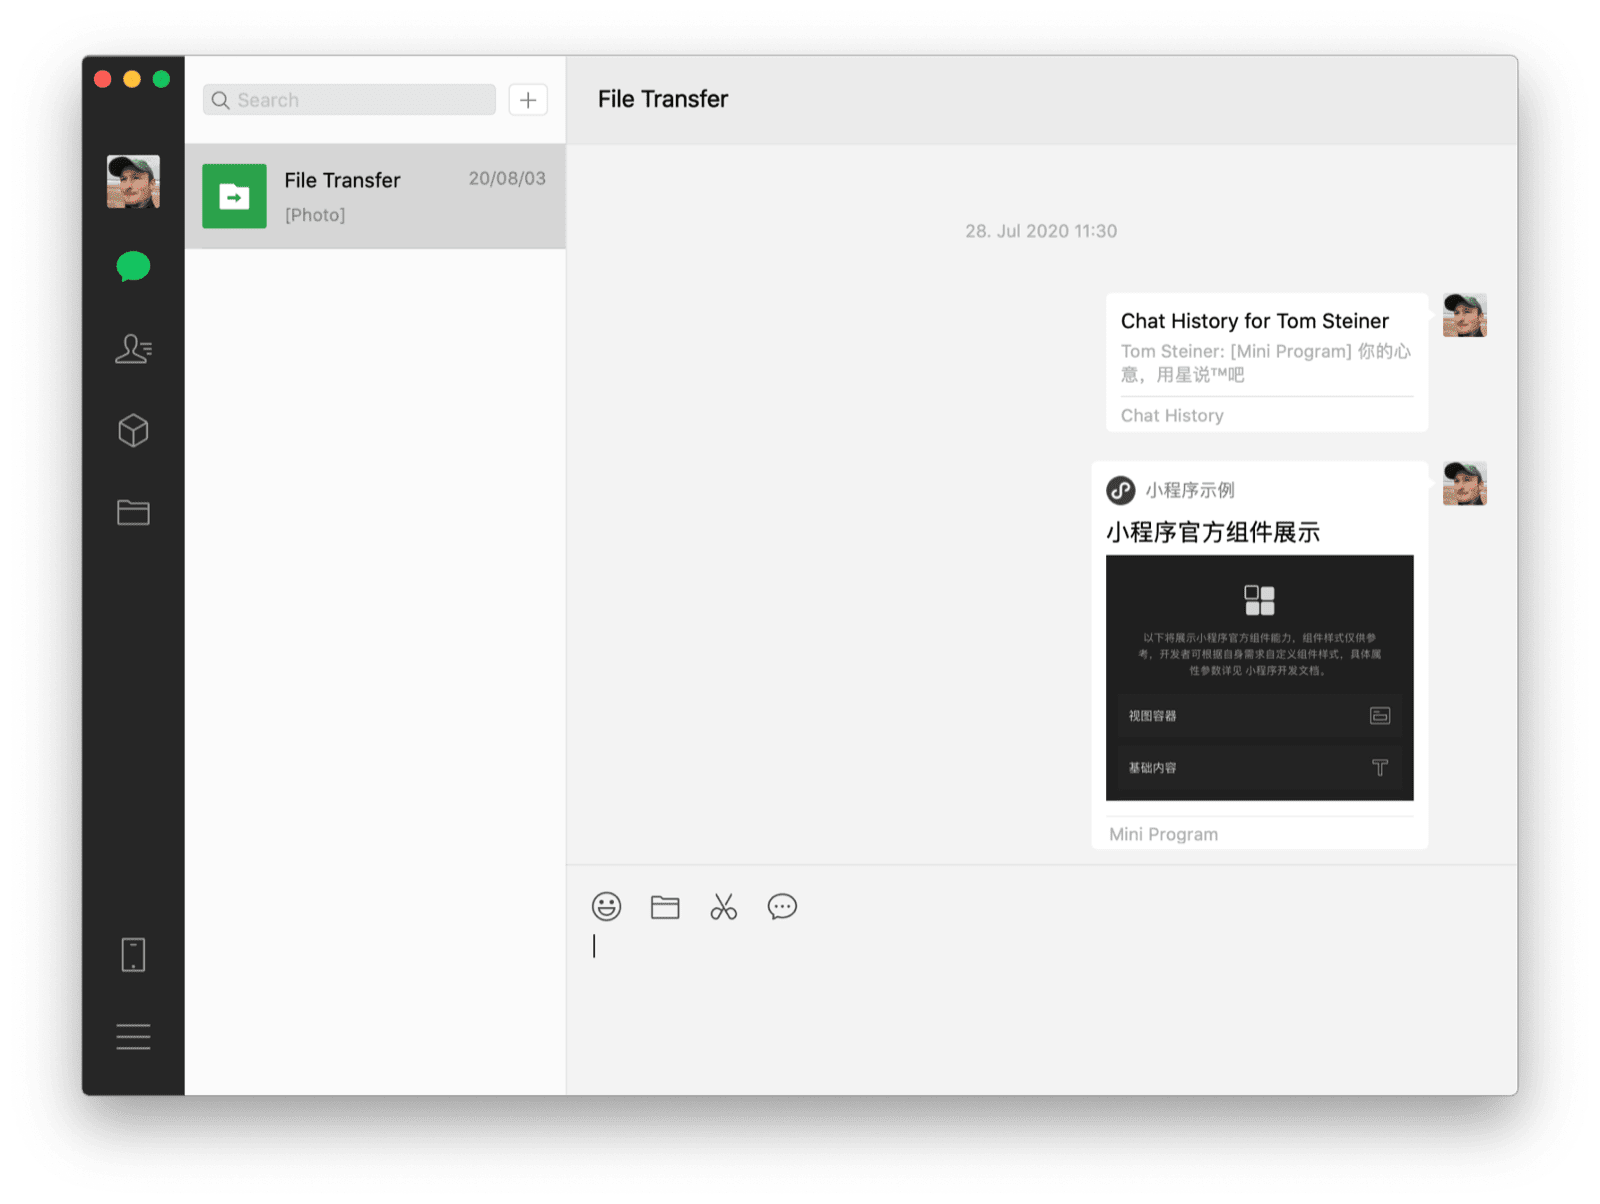 Cliente do WeChat para macOS mostrando um chat com um miniapp compartilhado e um histórico de chat como as duas mensagens visíveis.